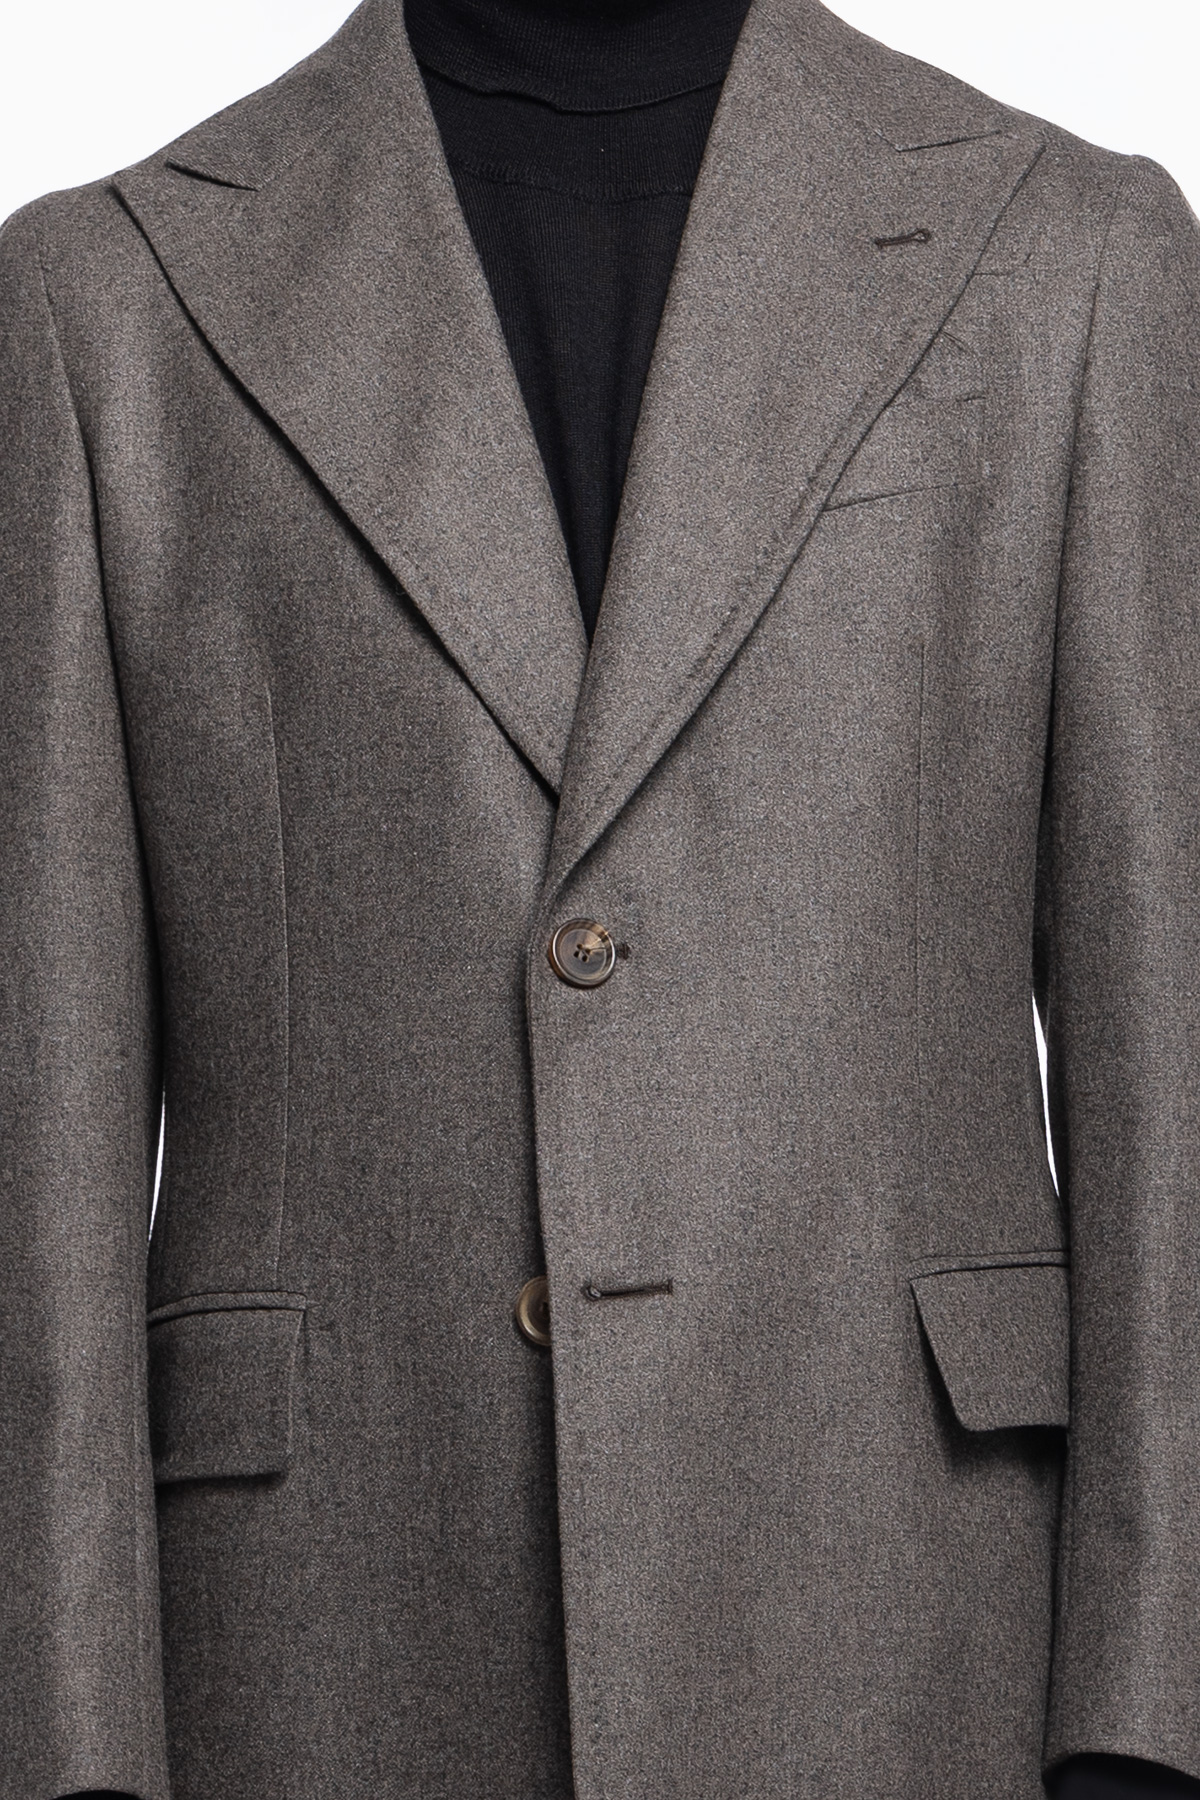 Cappotto uomo grigio monopetto in lana Vitale Barberis Canonico rever largo